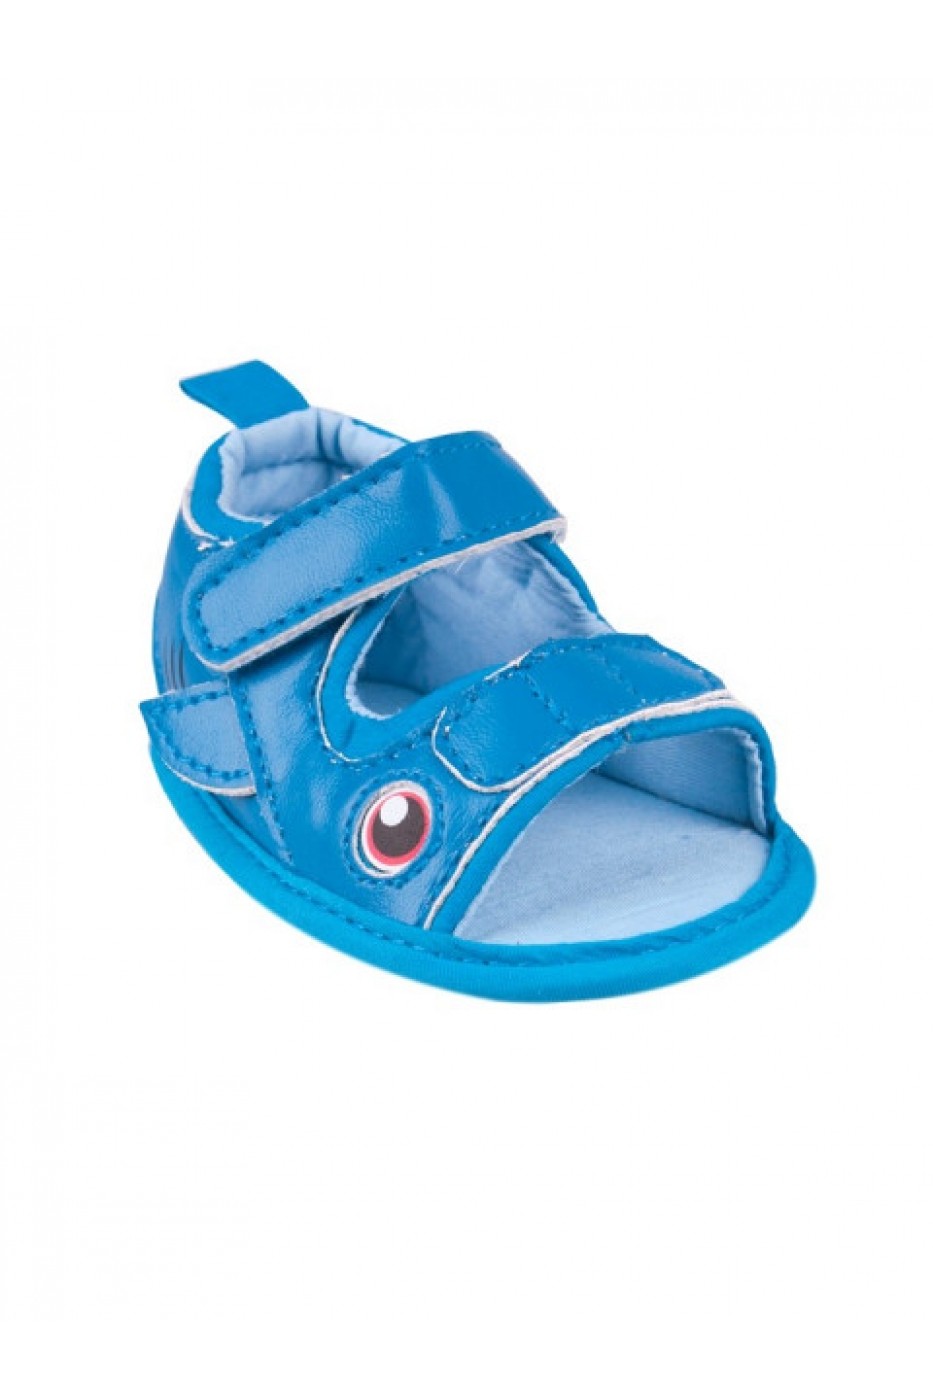 Sandale Pentru Bebelusi Pestisorul Albastru Fashionup